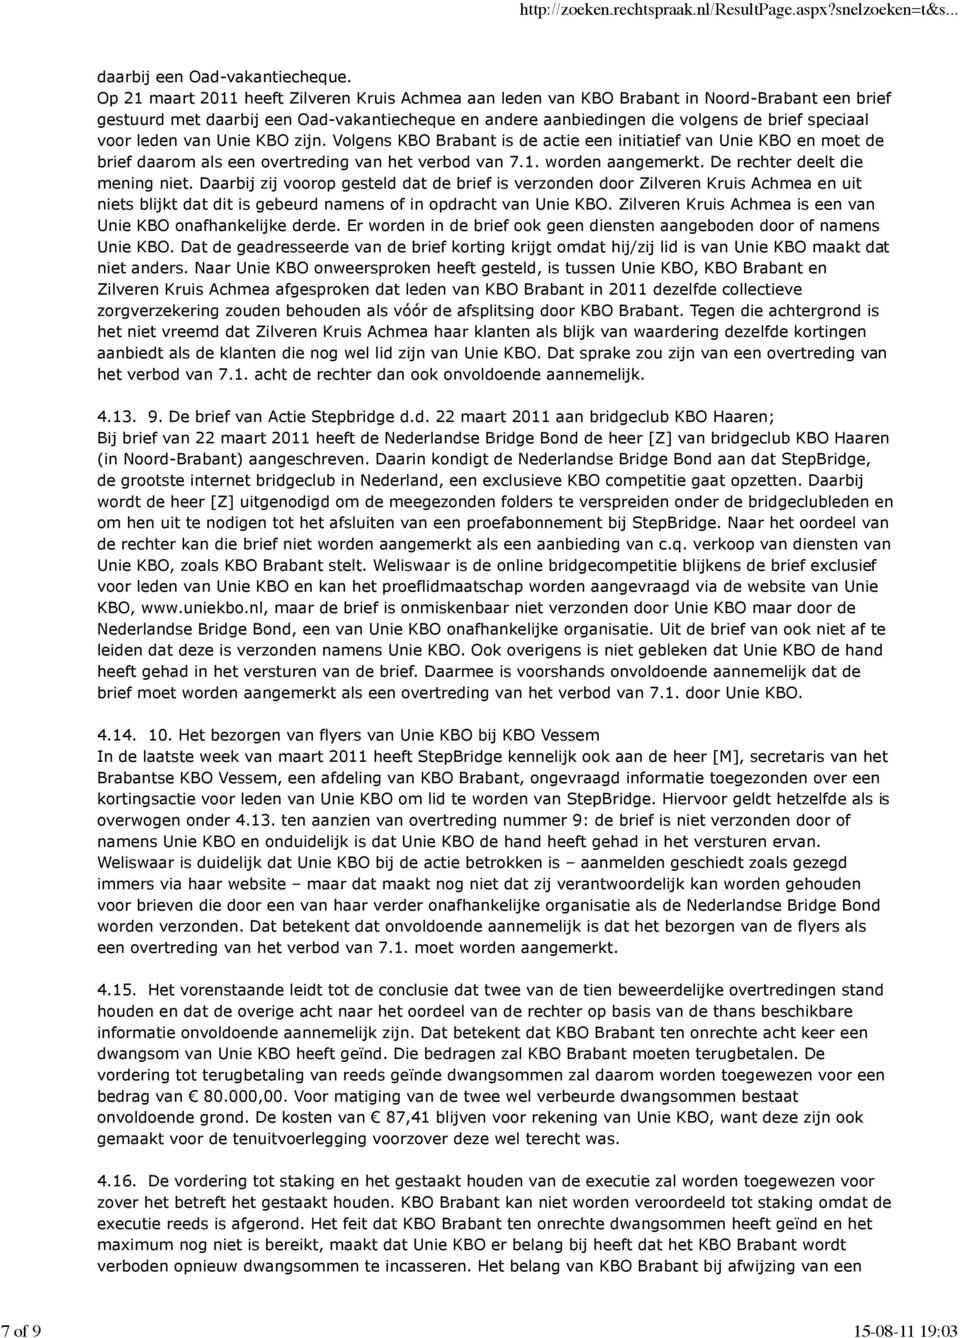 leden van Unie KBO zijn. Volgens KBO Brabant is de actie een initiatief van Unie KBO en moet de brief daarom als een overtreding van het verbod van 7.1. worden aangemerkt.